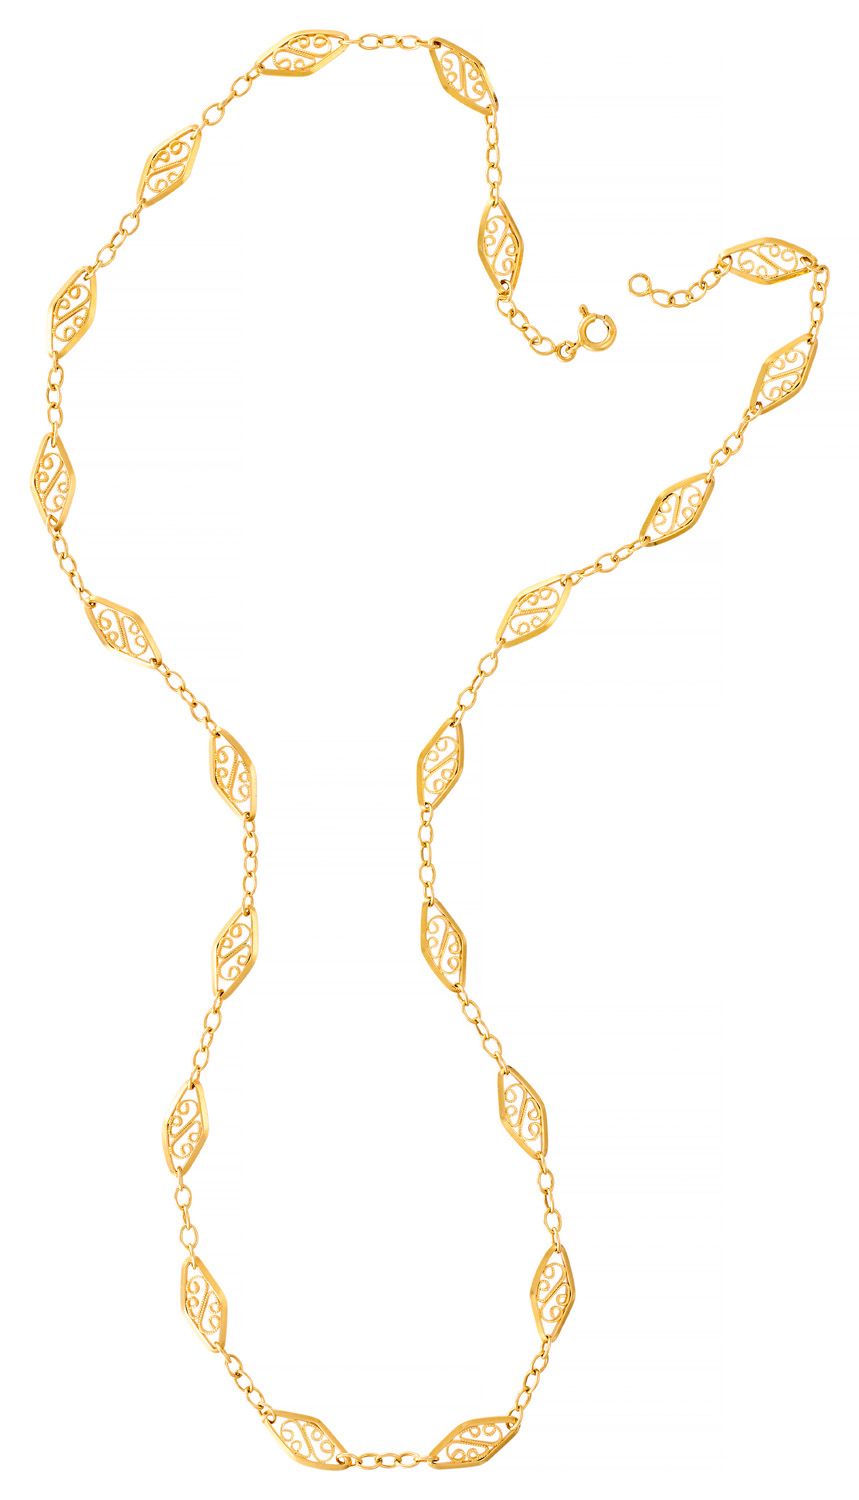 Collier draperie in oro giallo

L: 60 cm

Peso: 17,50 g (18K-750/1000)